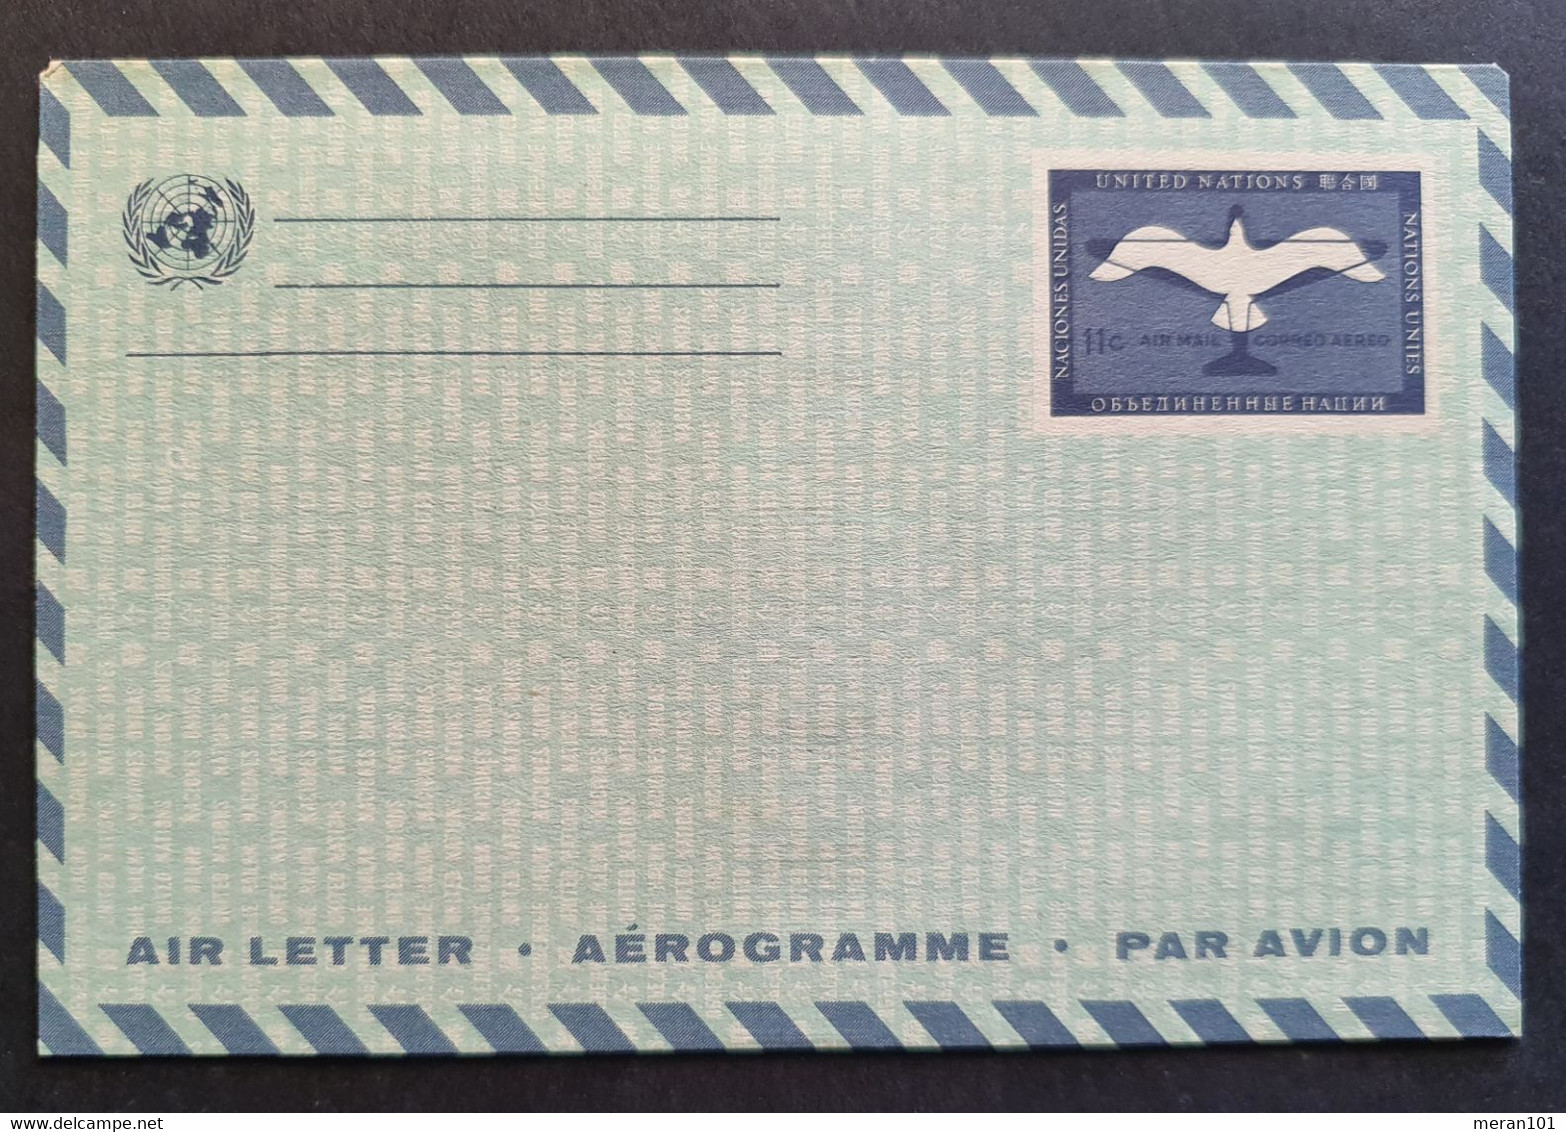 Vereinte Nationen New York, Umschlag Aerogramm Ungebraucht - Posta Aerea